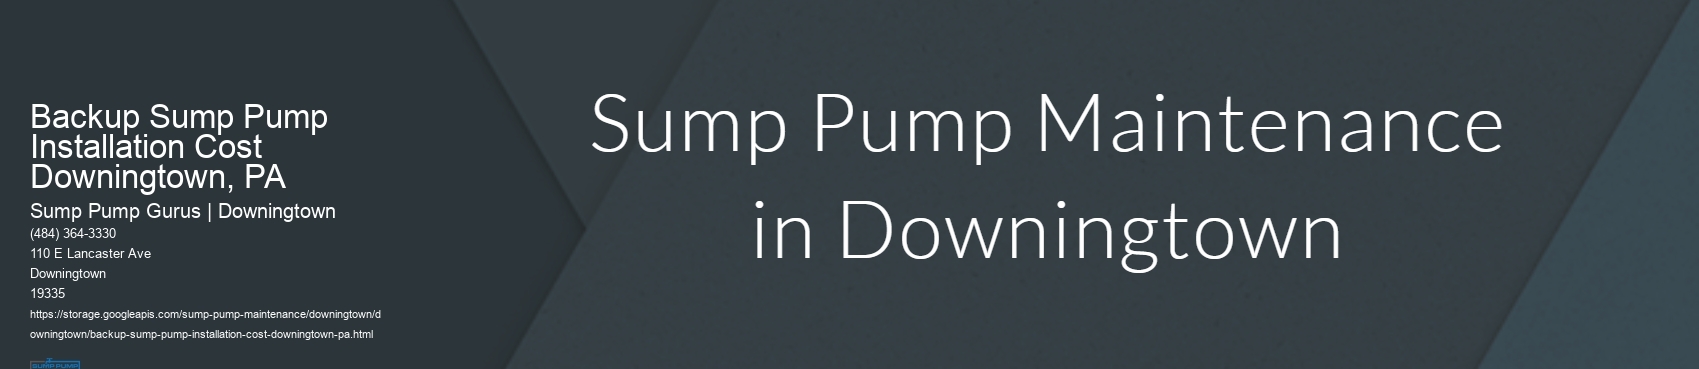 Backup Sump Pump Installation Cost Downingtown, PA